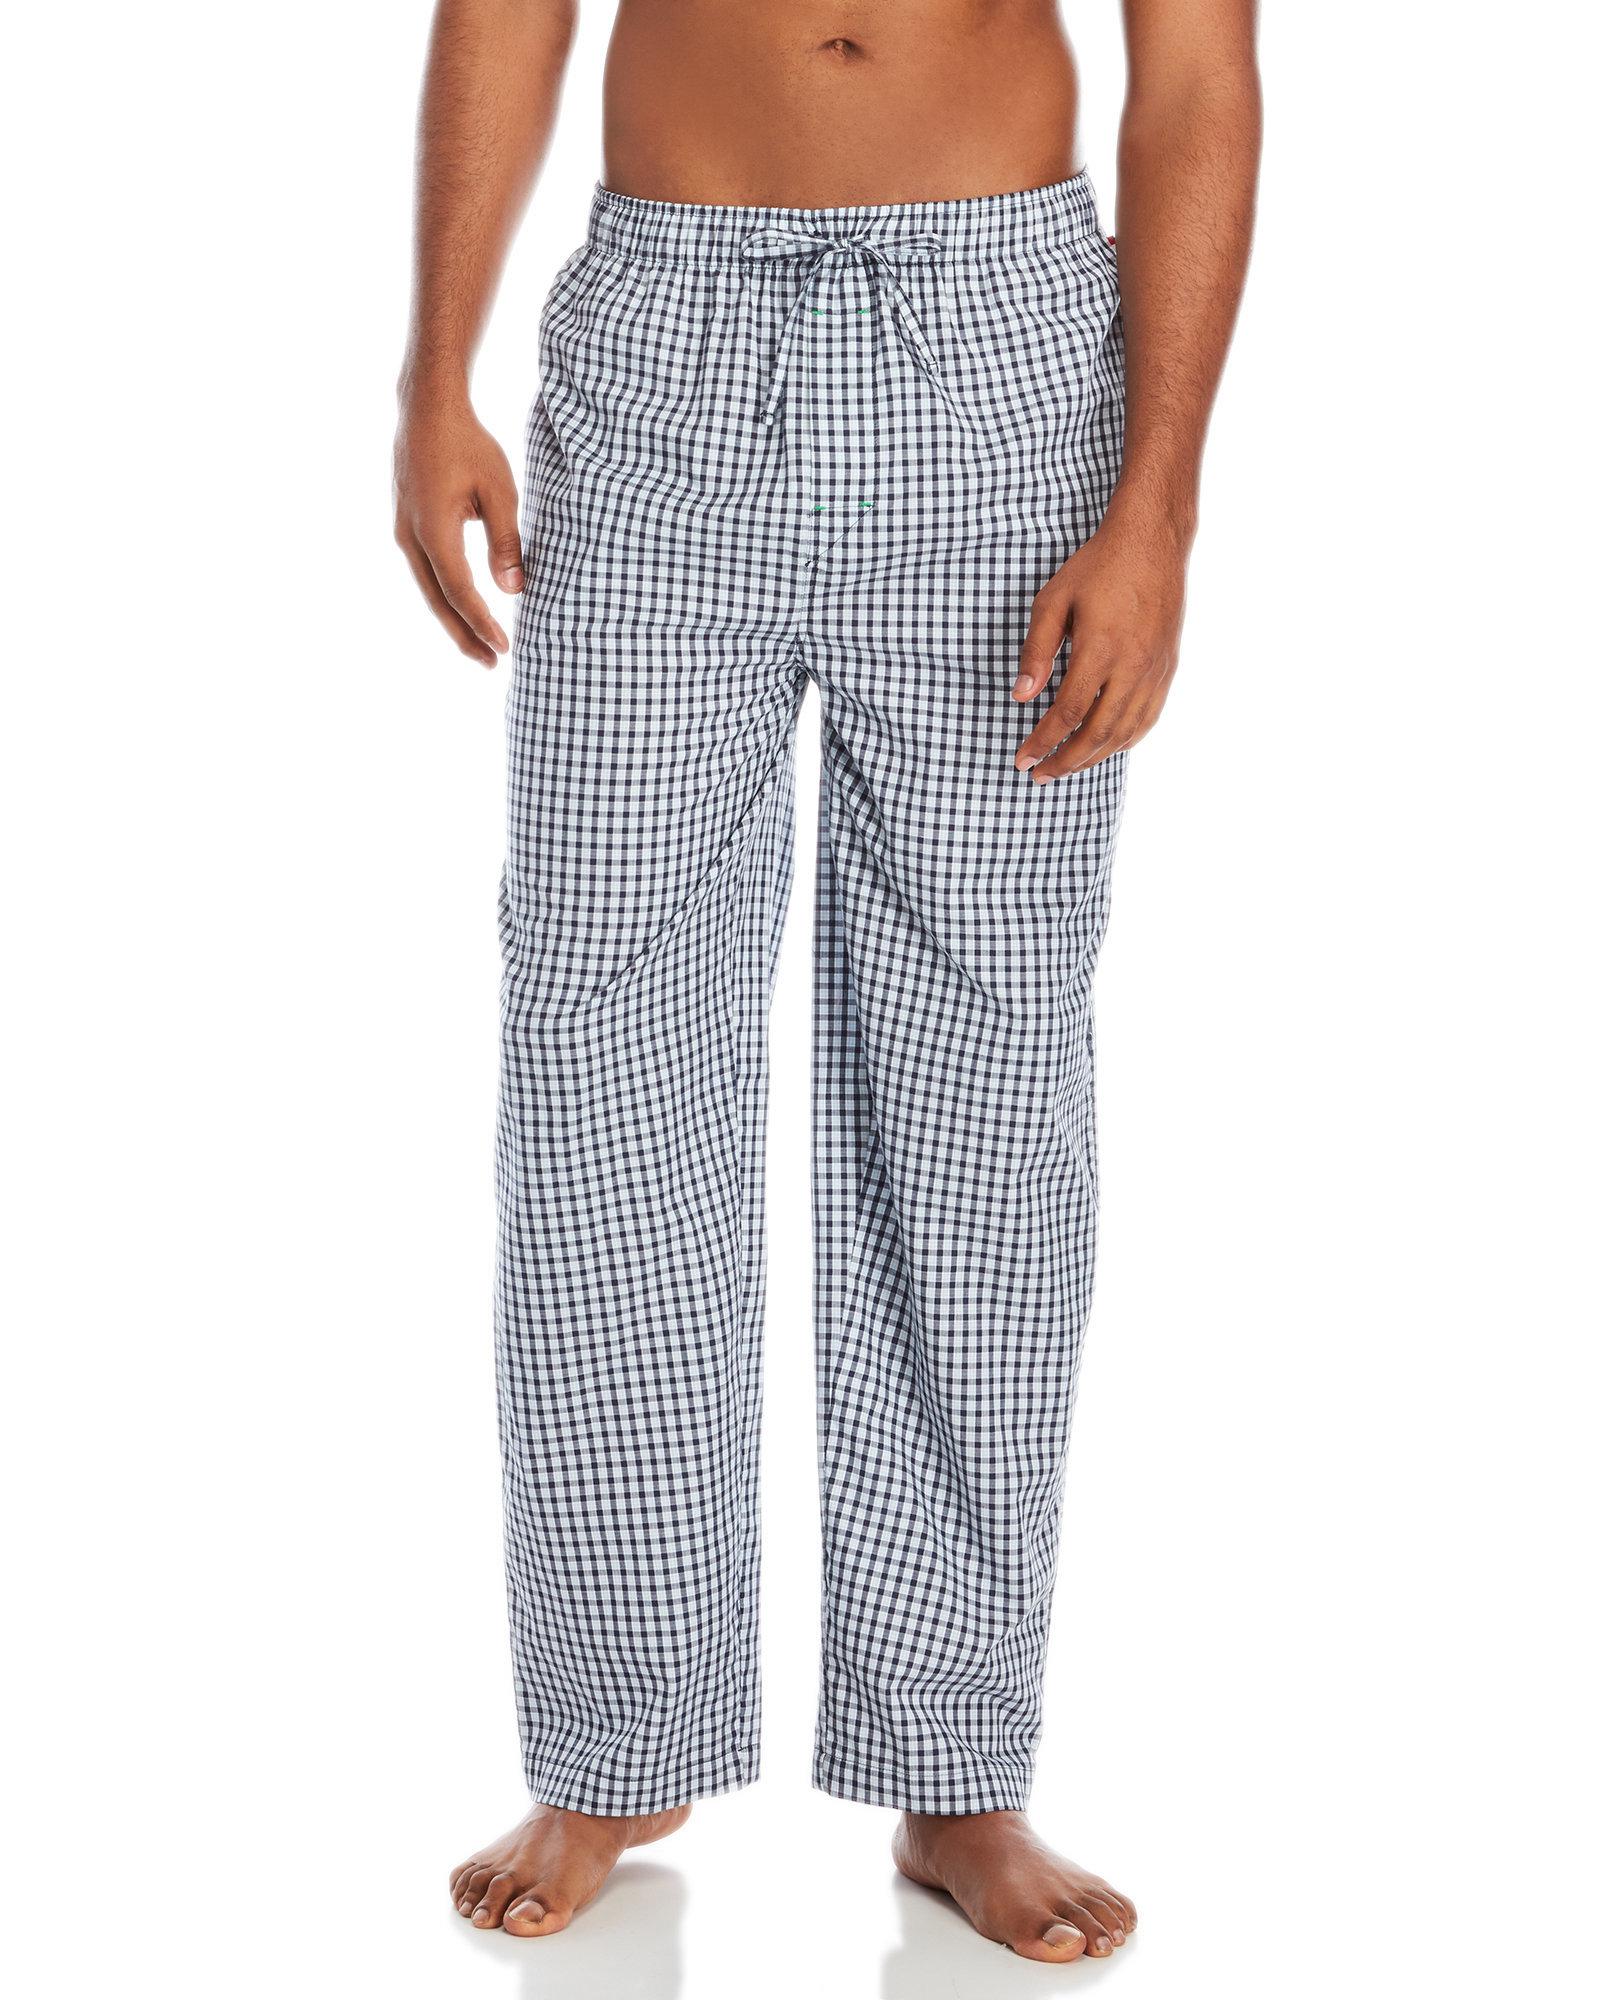 Lyst - Tommy Hilfiger Woven Plaid Sleepwear Pants in Blue for Men